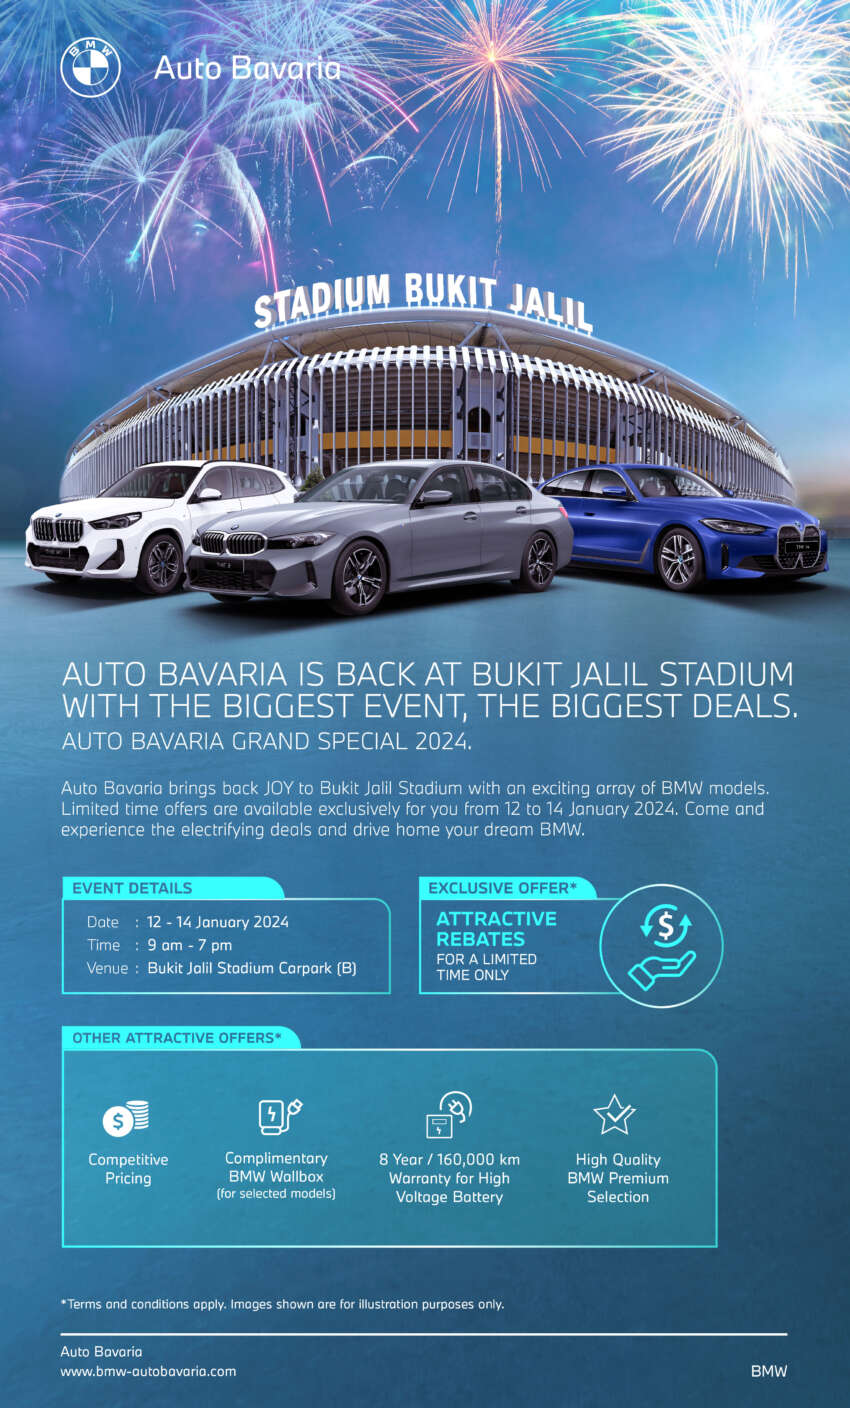 Auto Bavaria Grand Special 2024 – great deals from BMW, MINI, BMW Motorrad at Bukit Jalil, Jan 12-14 1713854